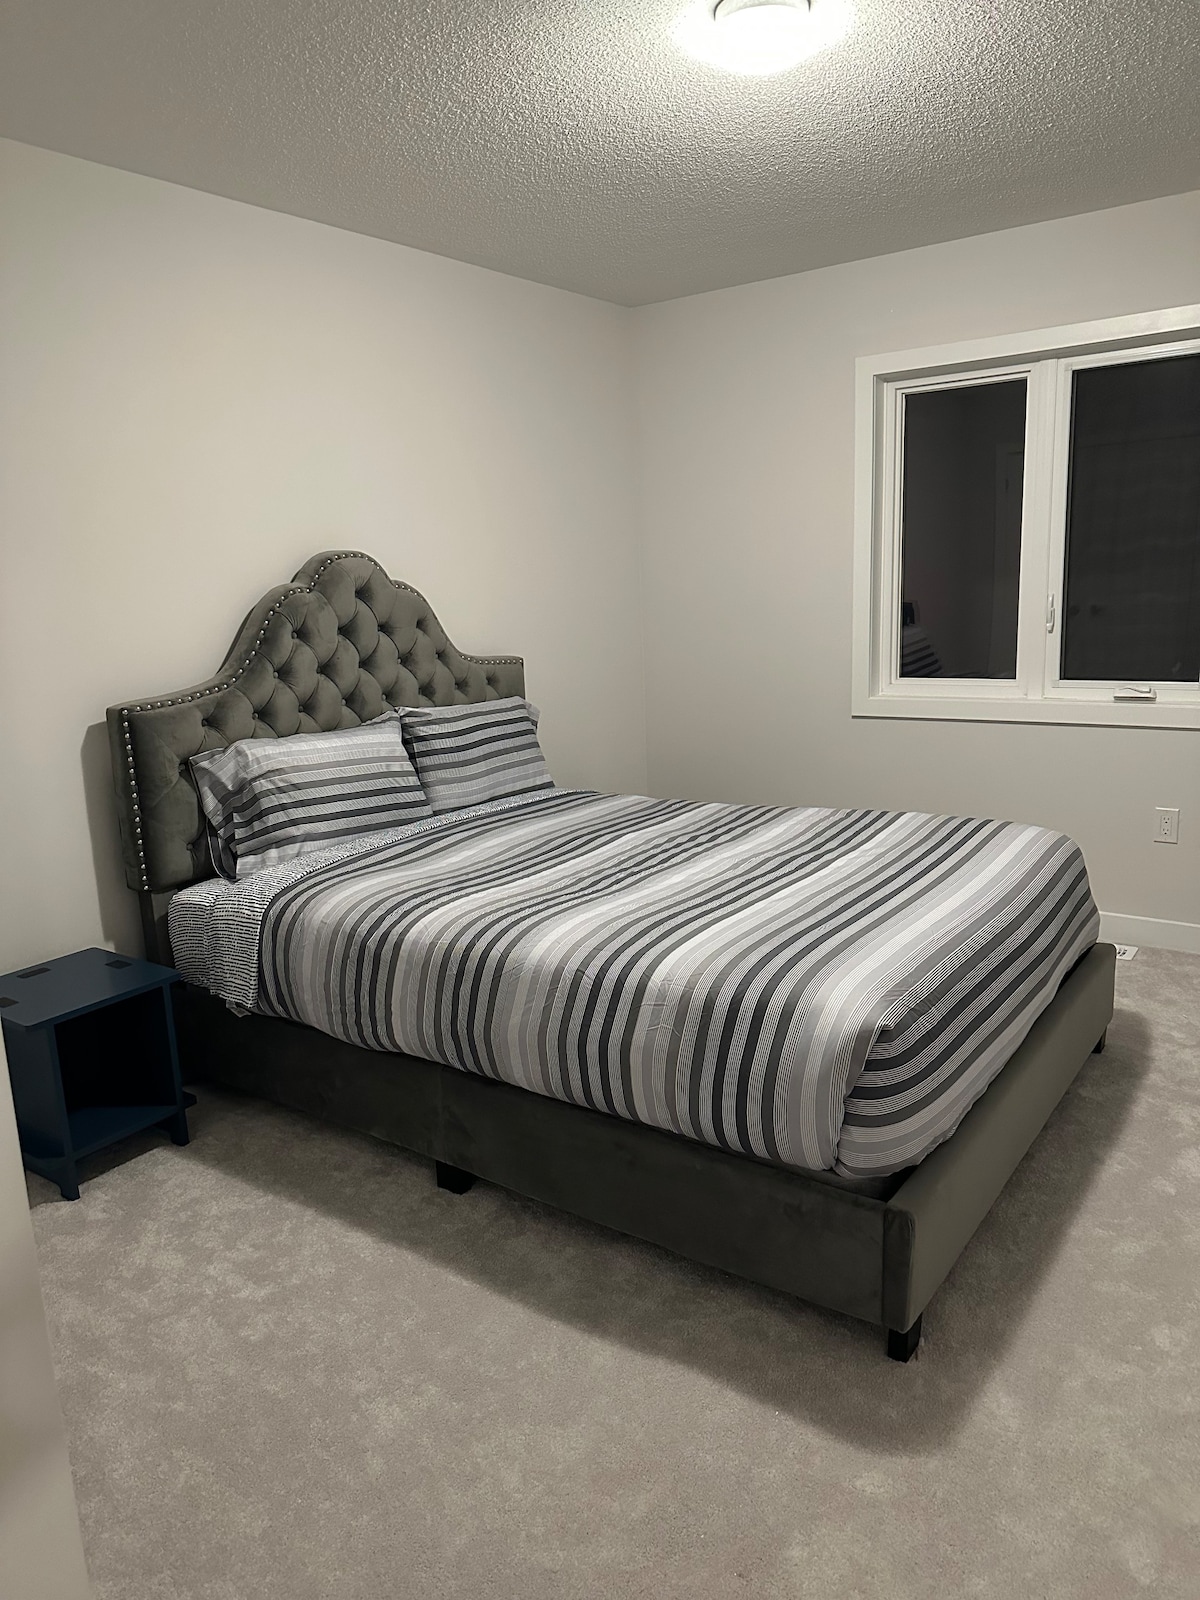 Luxury 5 bedroom home in Simcoe